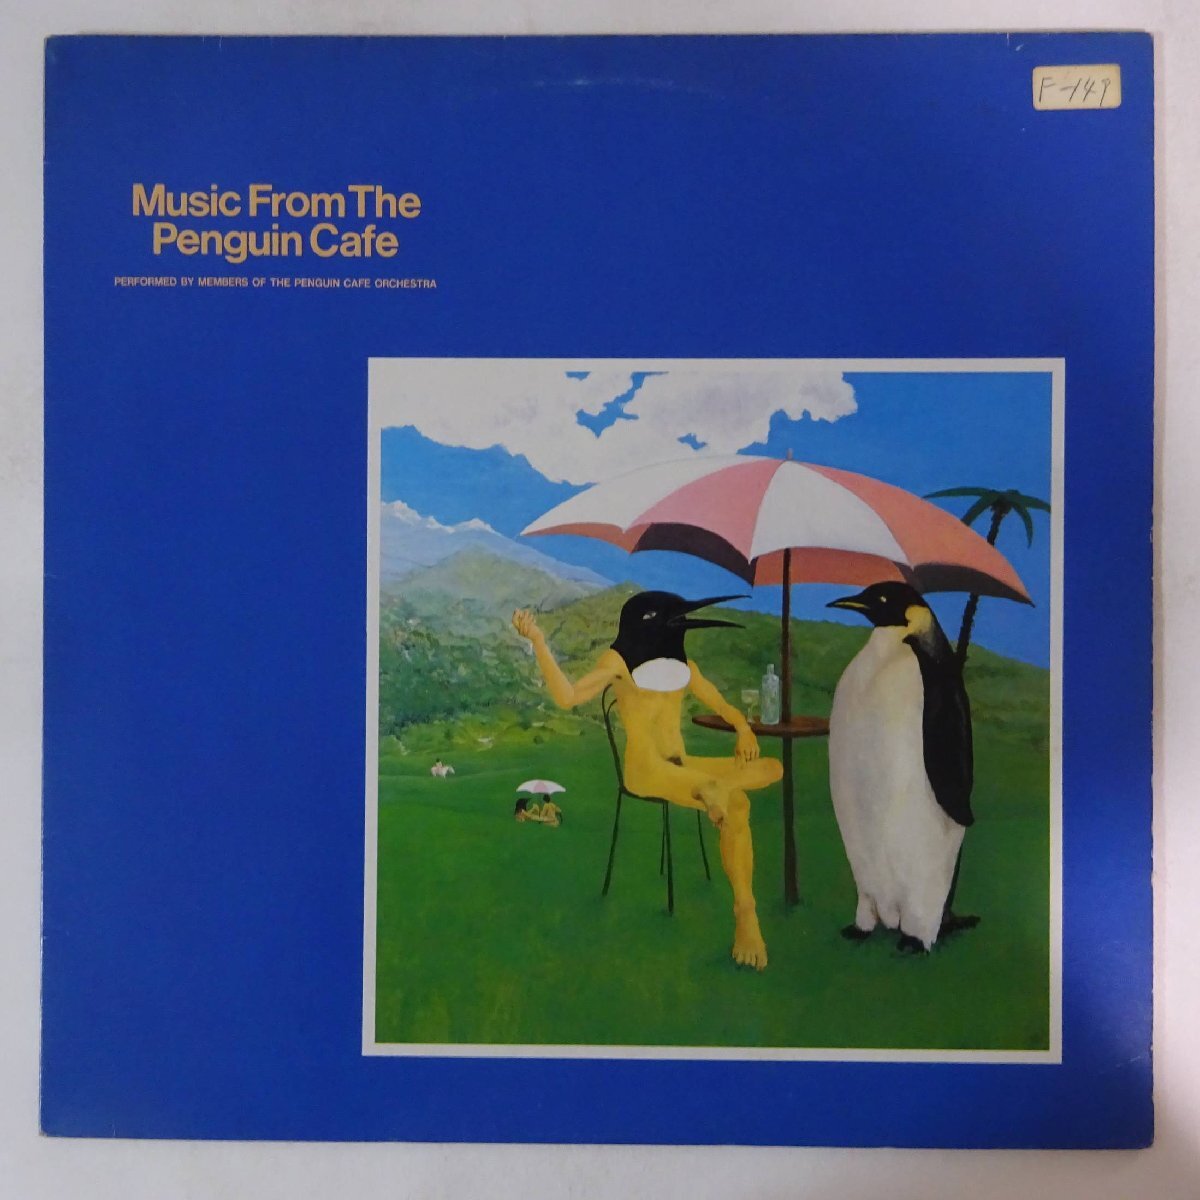 10023463;【国内盤】Members Of The Penguin Cafe Orchestra / Music From The Penguin Cafe ようこそペンギン・カフェへ_画像1